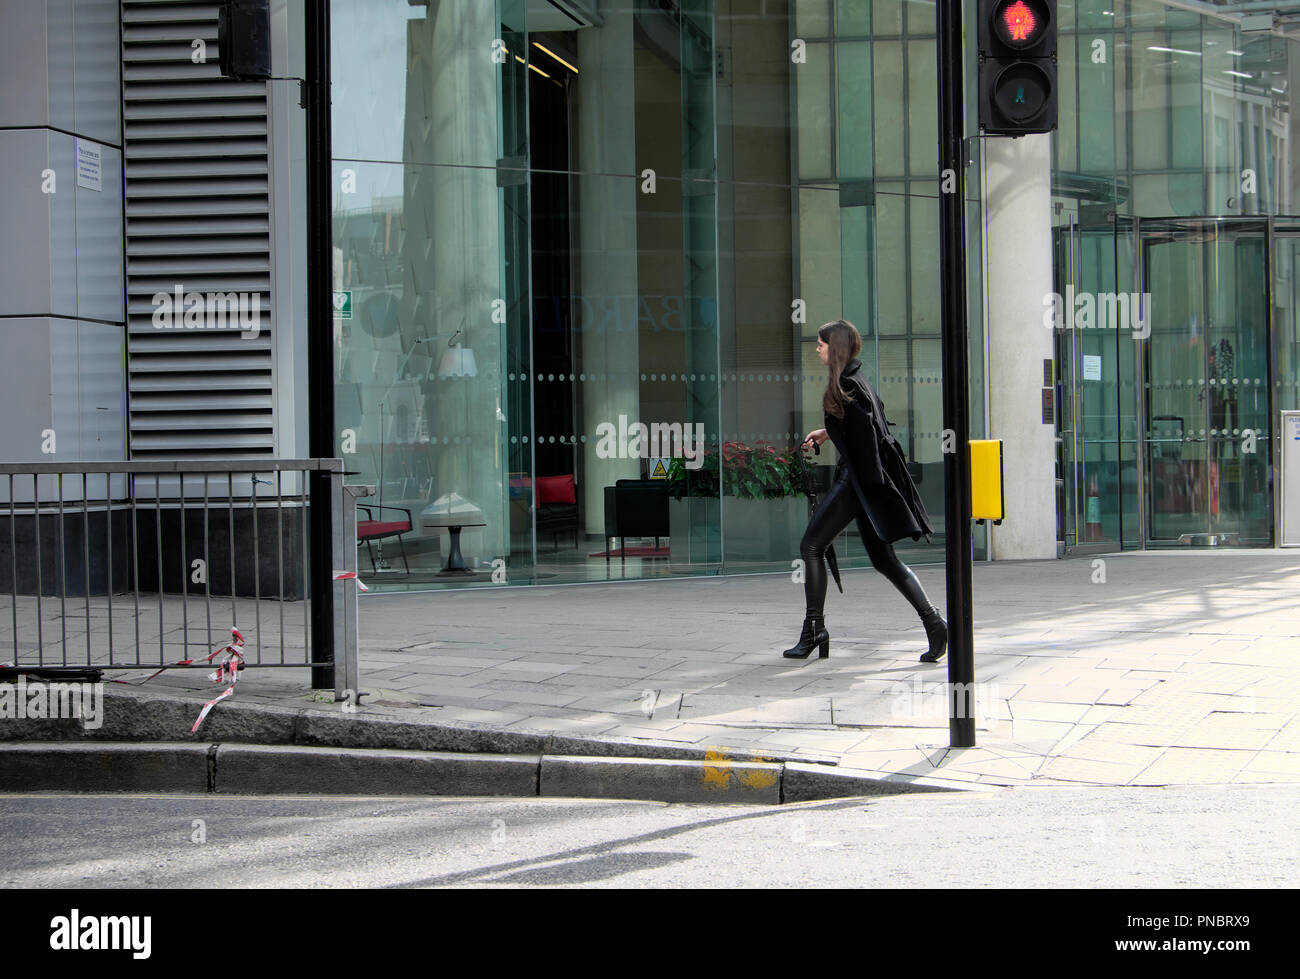 Elegante giovane donna vestita di nero a piedi lungo Finsbury Pavement al di fuori di un edificio aziendale nella città di Londra Foto Stock